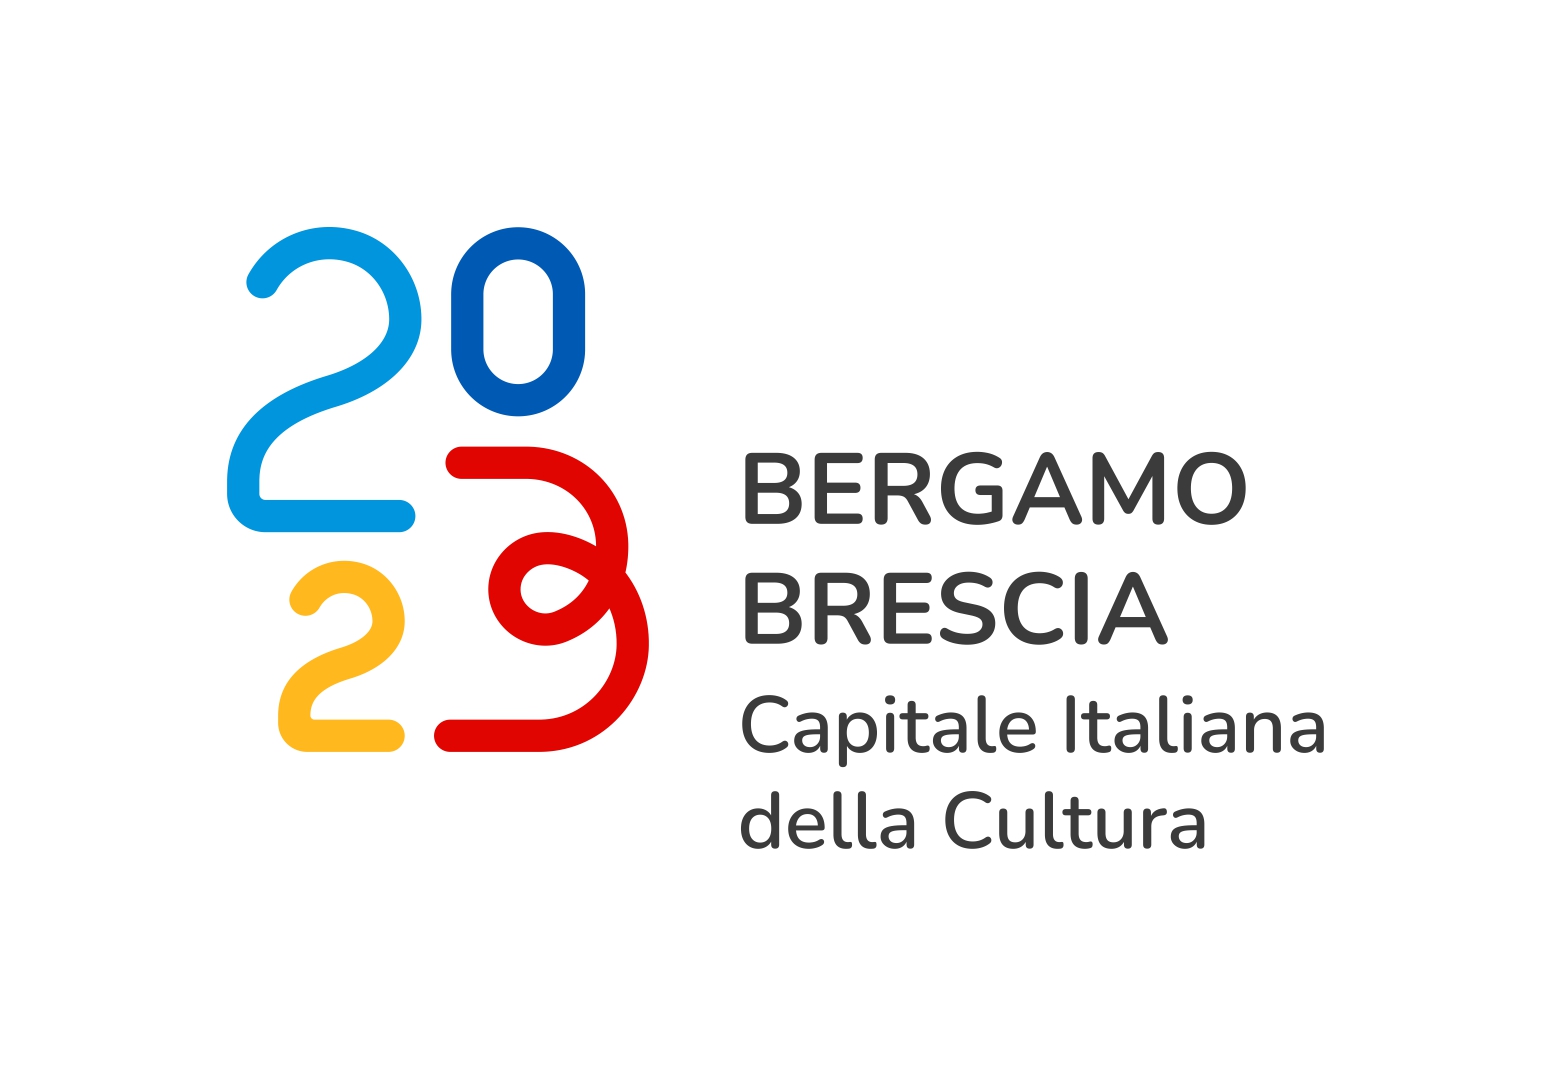 Presentato il Logo per Brescia-Bergamo 2023